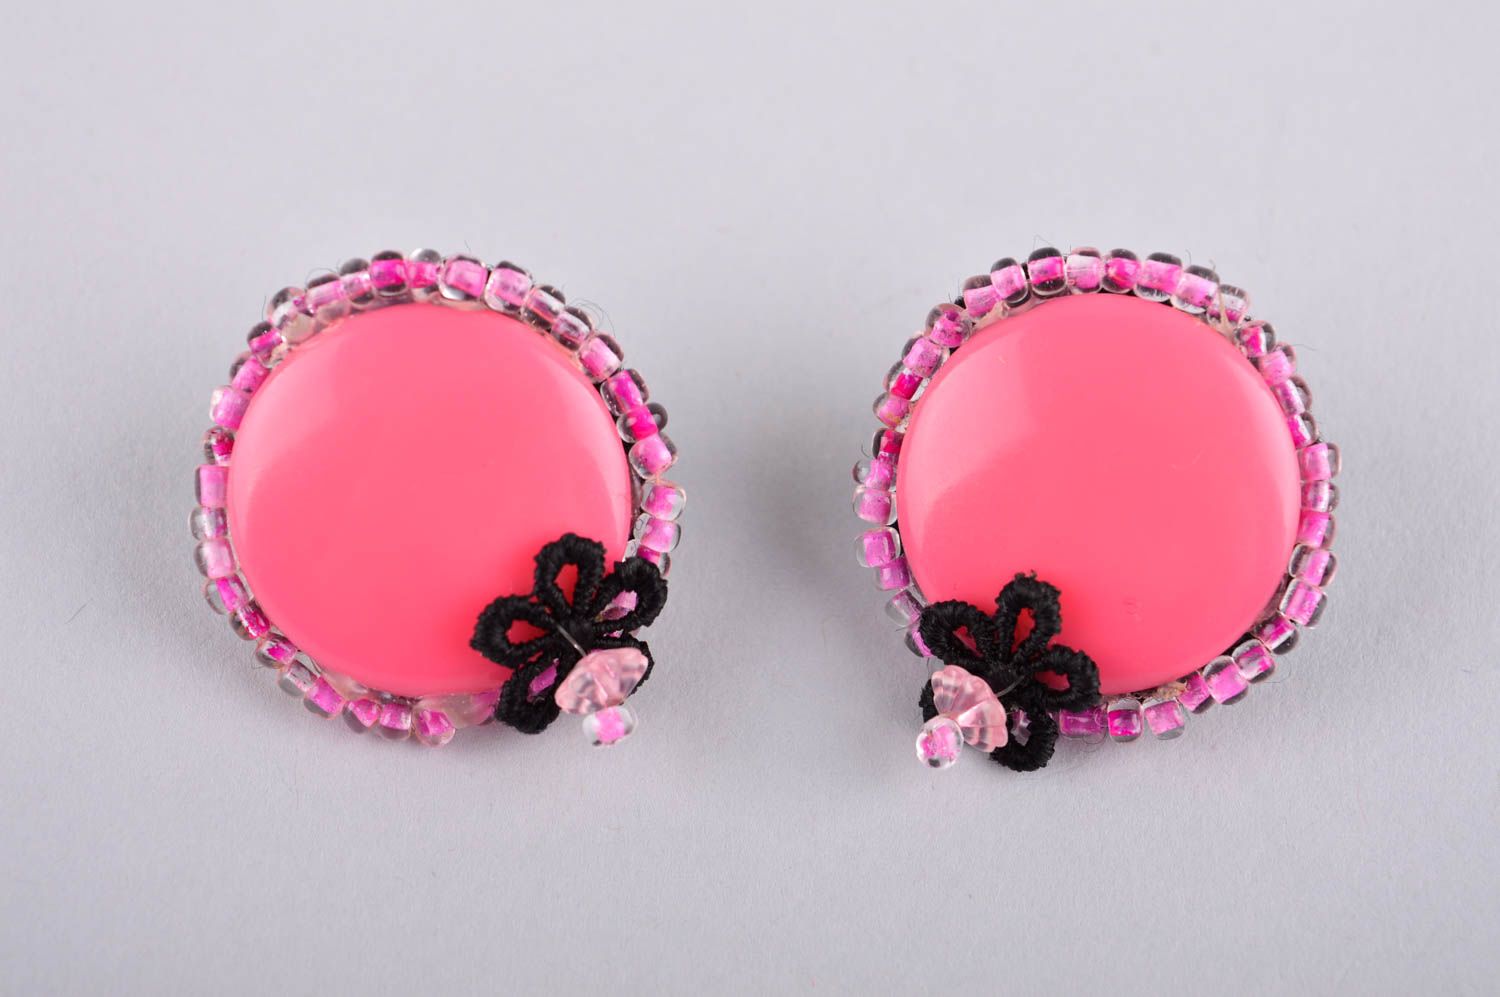 Handmade earrings designer stud earrings unusual accessory gift for girls photo 3